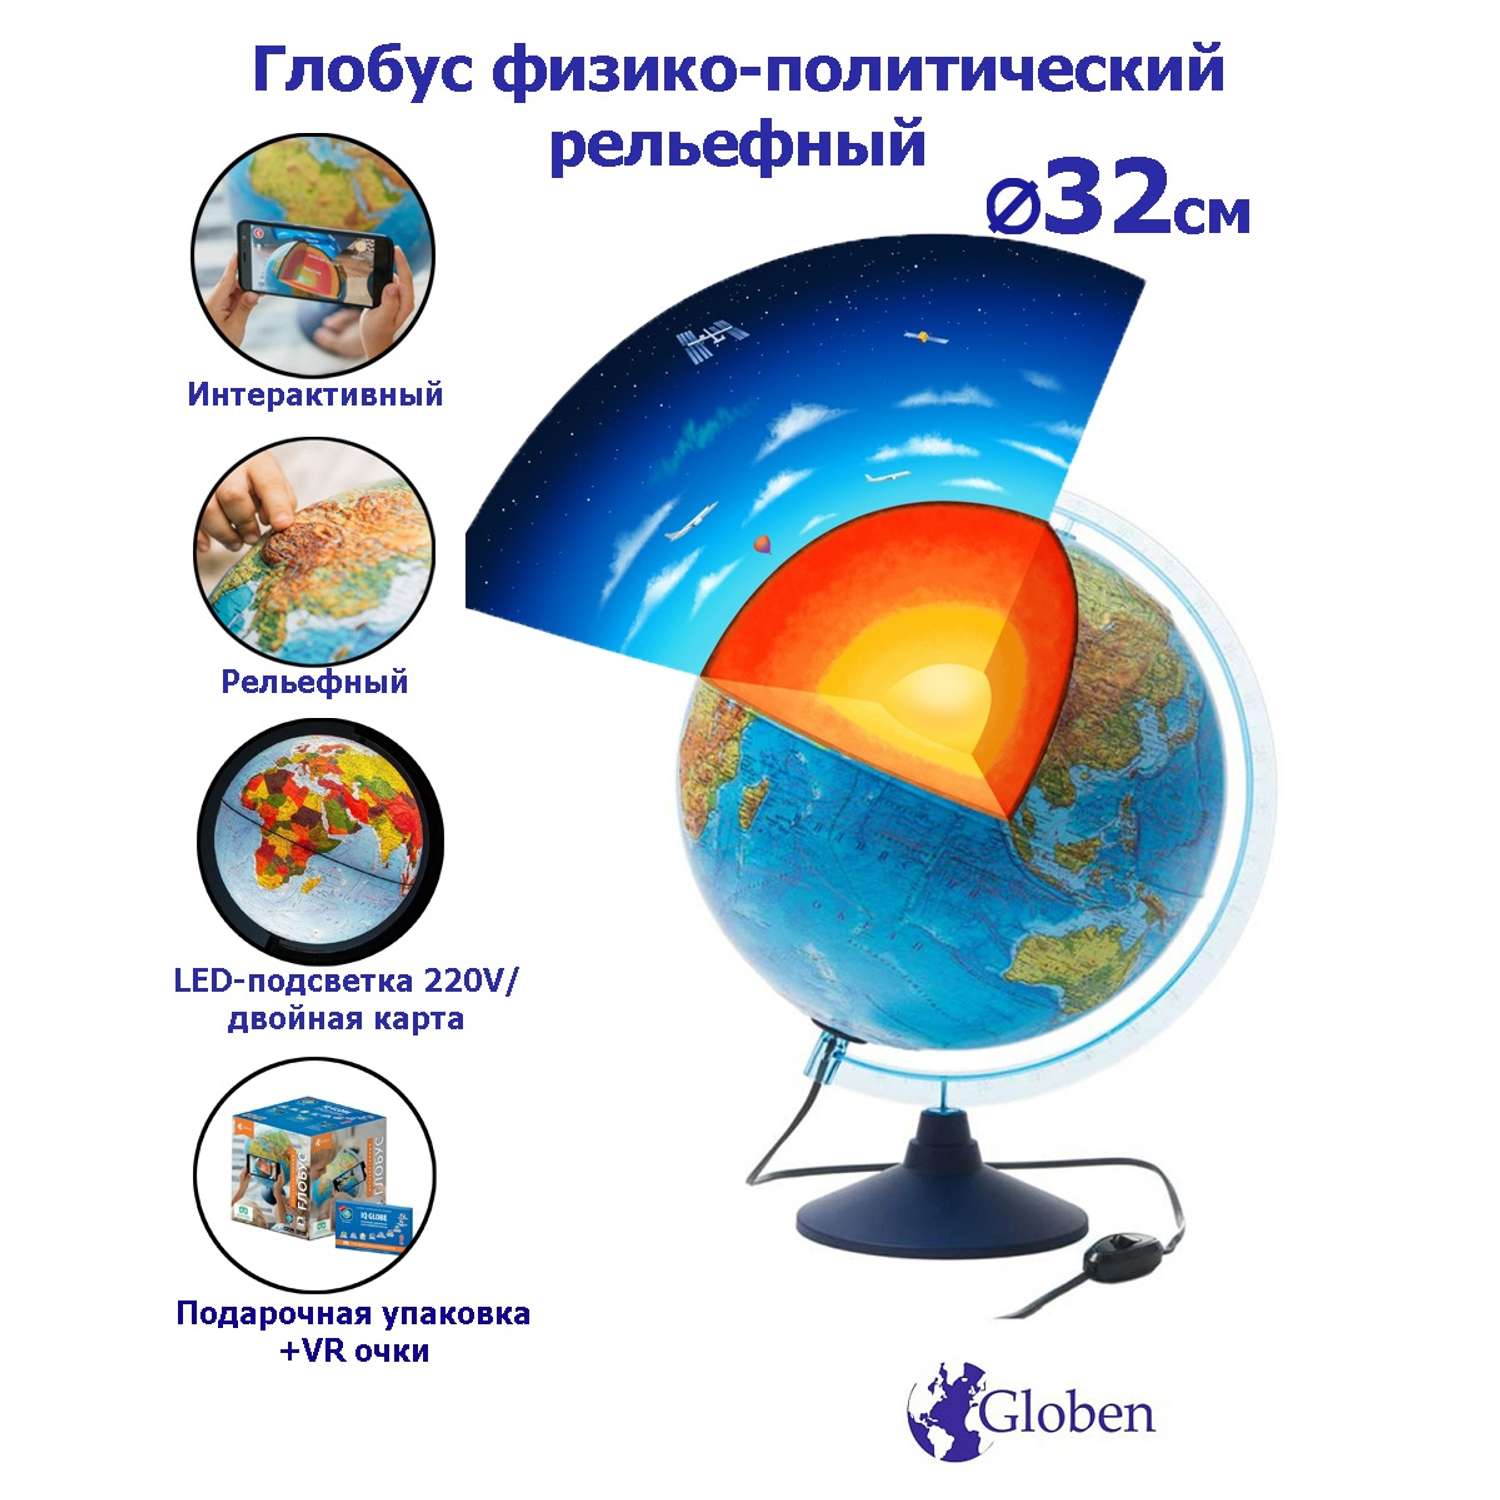 Глобус Globen Земля Интерактивный рельефный с LED-подсветкой 32 см + VR очки - фото 1